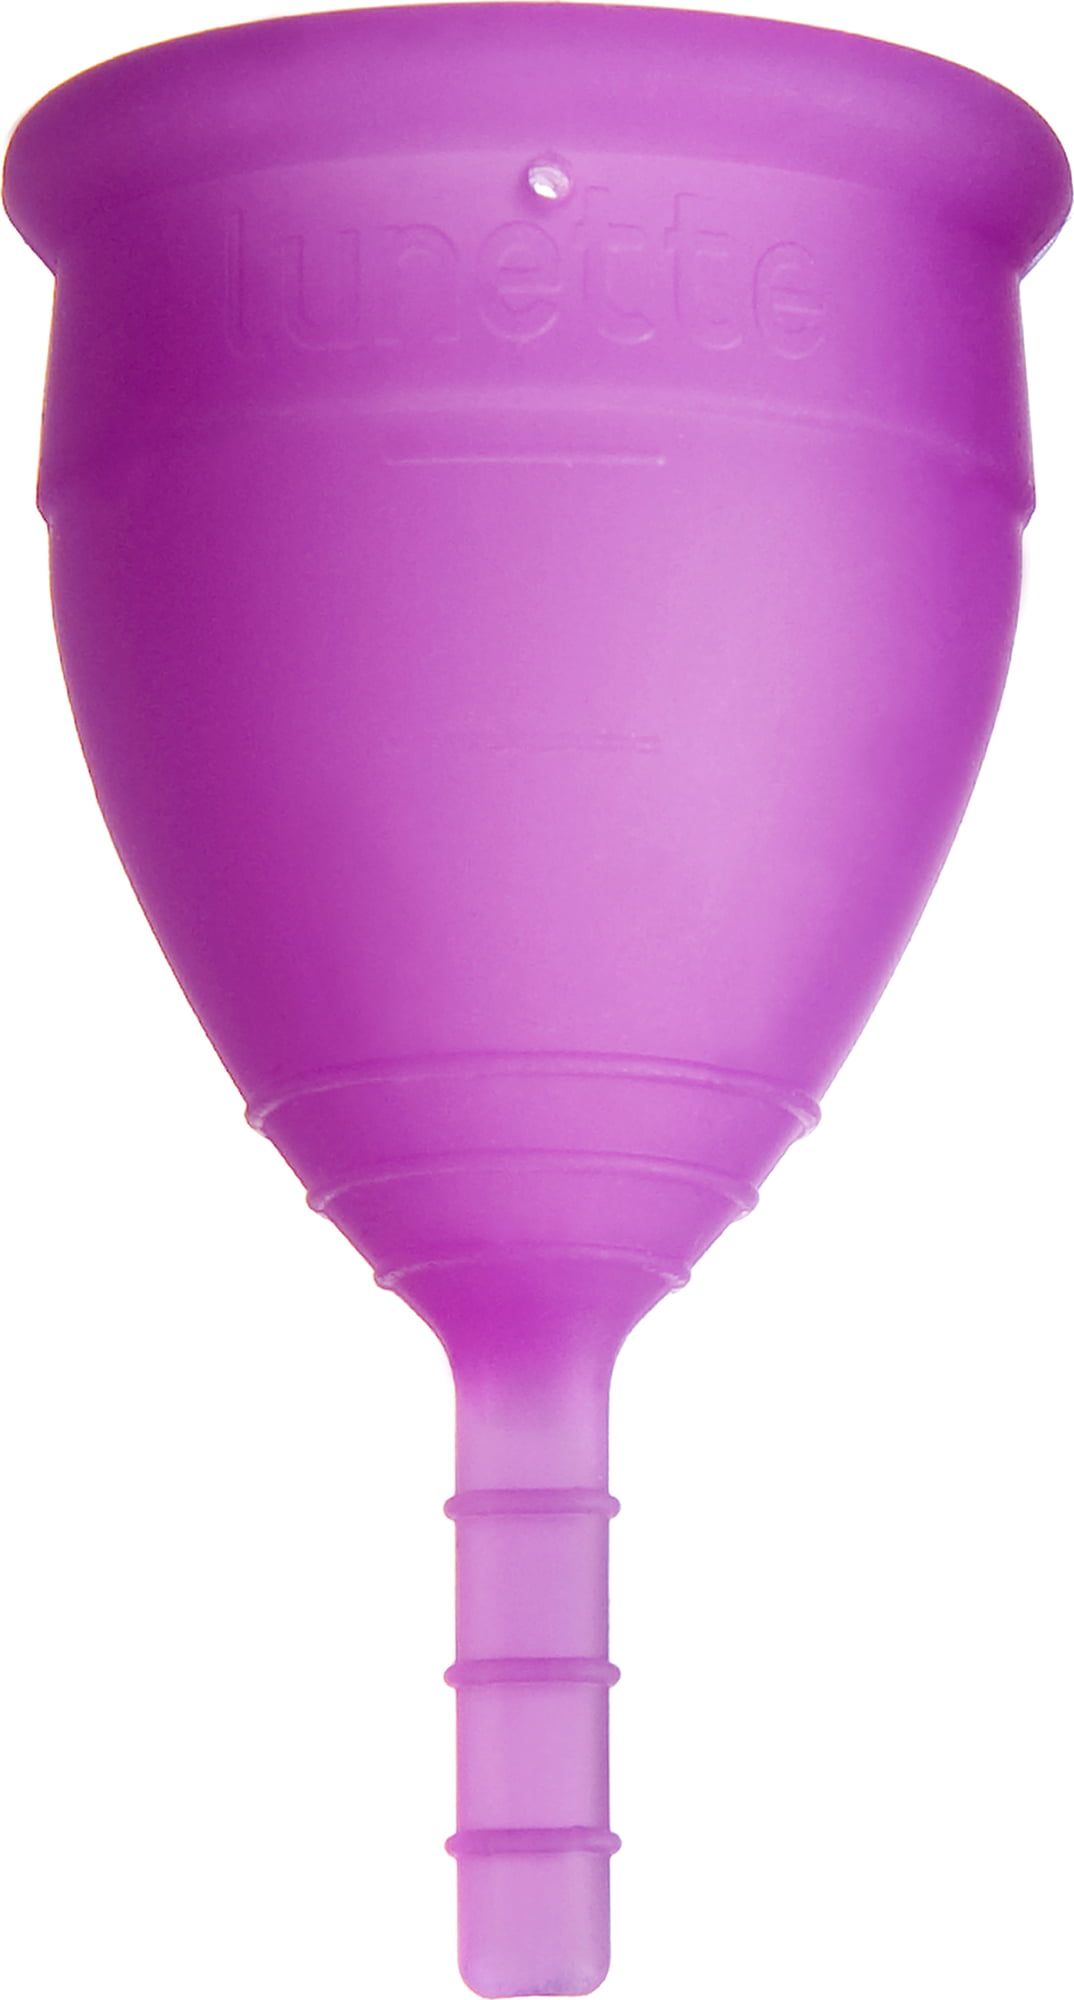 Lunette menstrual cup. size 1 - Ecco Verde Online Shop